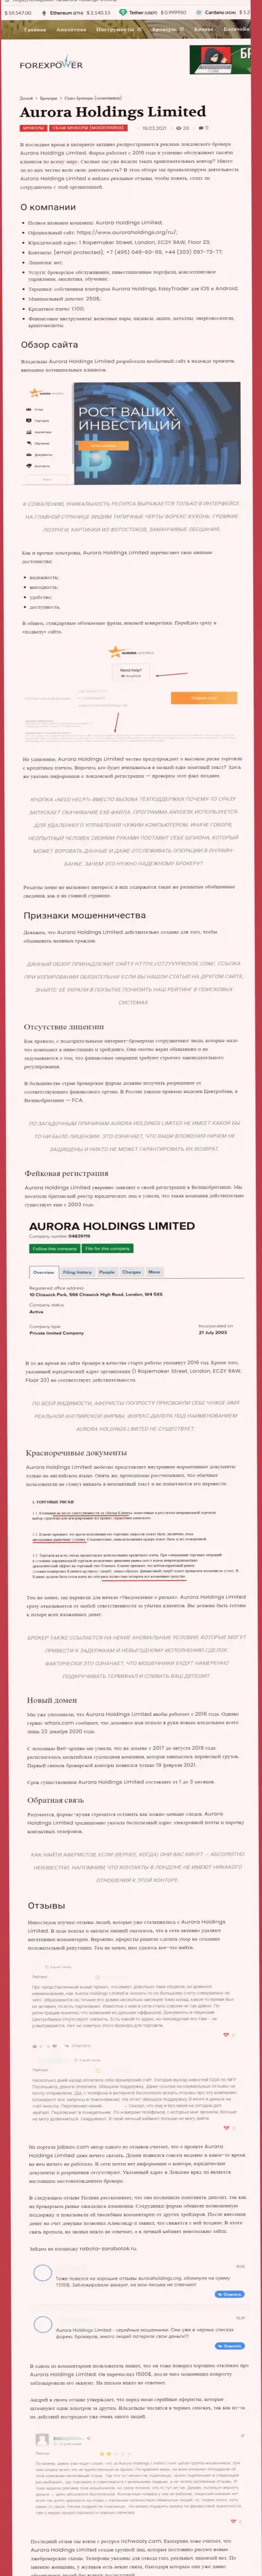 Aurora Holdings - это интернет-мошенники, которых нужно обходить десятой дорогой (обзор противозаконных действий)